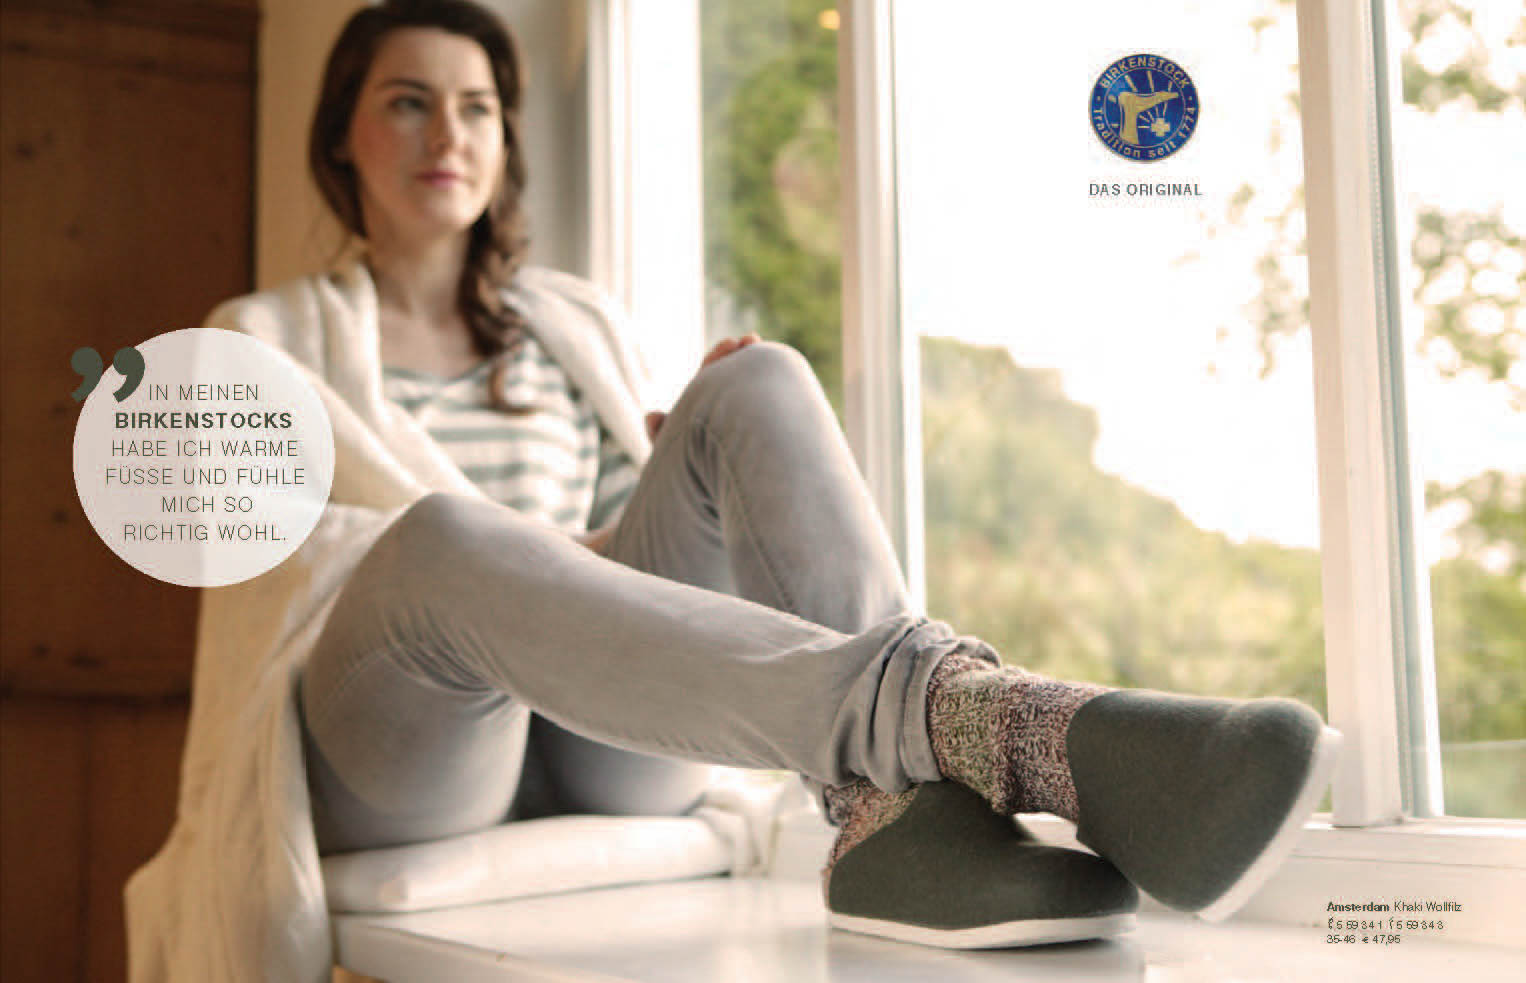 Eine Frau sitzt mit ausgestreckten Beinen an einem Fenster und trägt Birkenstock-Schuhe und Socken. Text und Logo werden überlagert angezeigt. Dies suggeriert eine gemütliche, entspannte Atmosphäre. © Fotografie Tomas Rodriguez